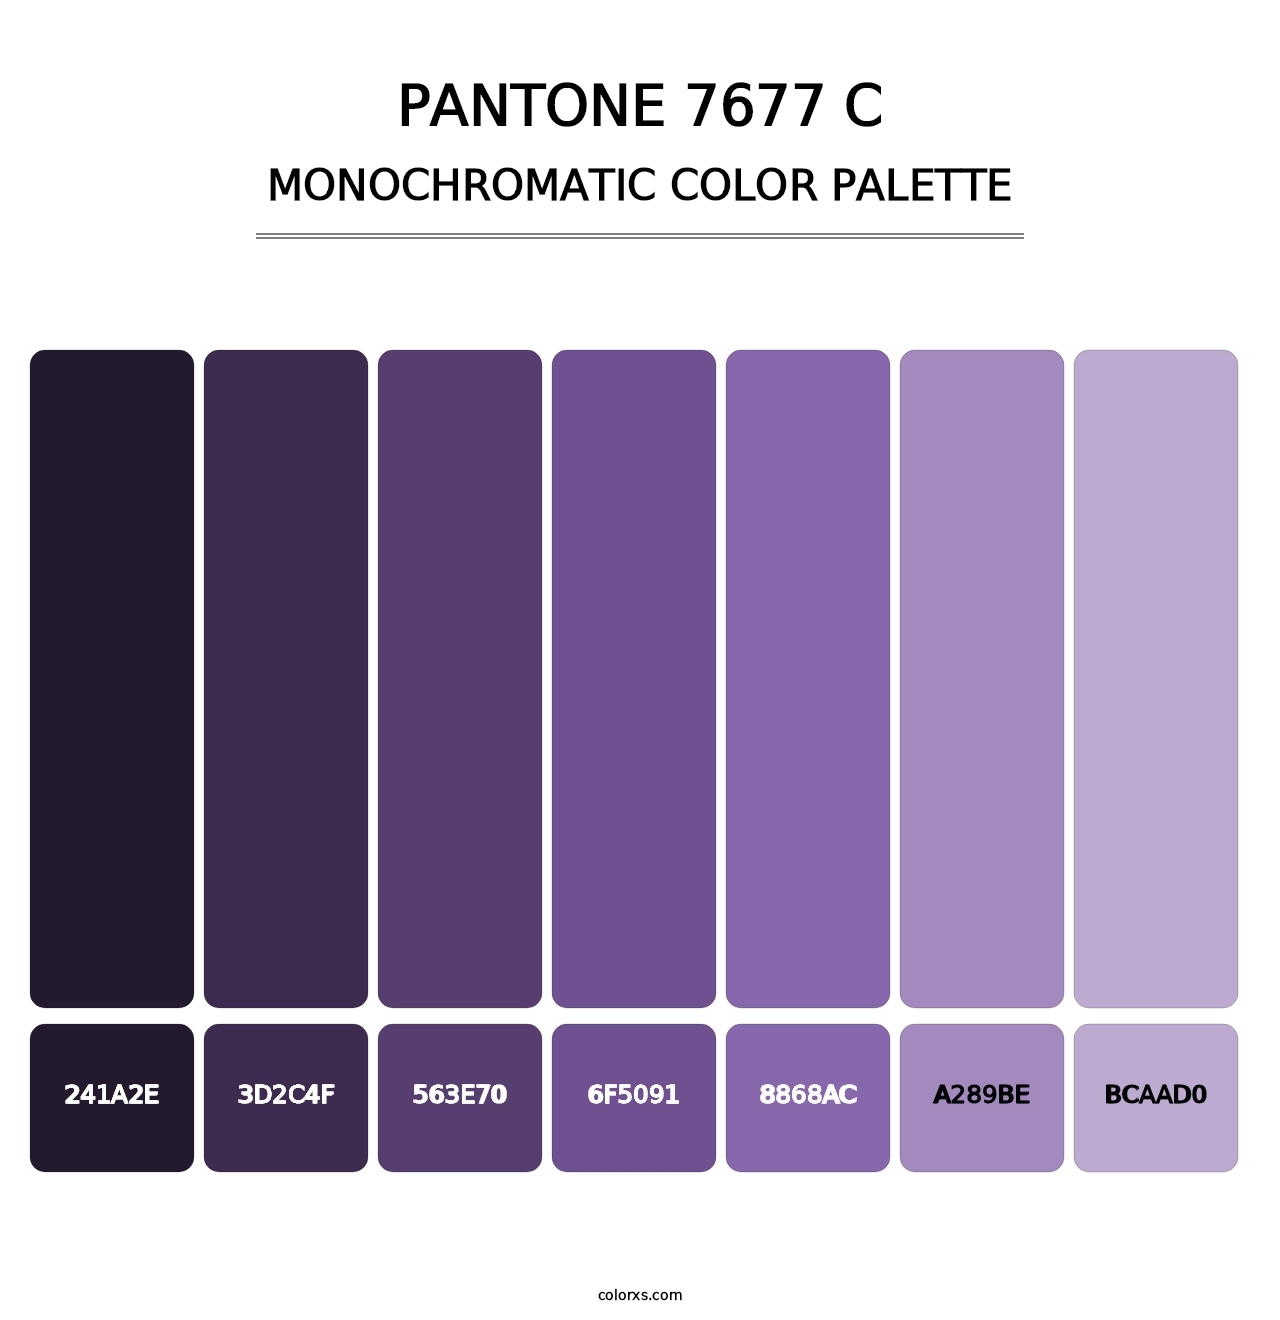 PANTONE 7677 C - Monochromatic Color Palette